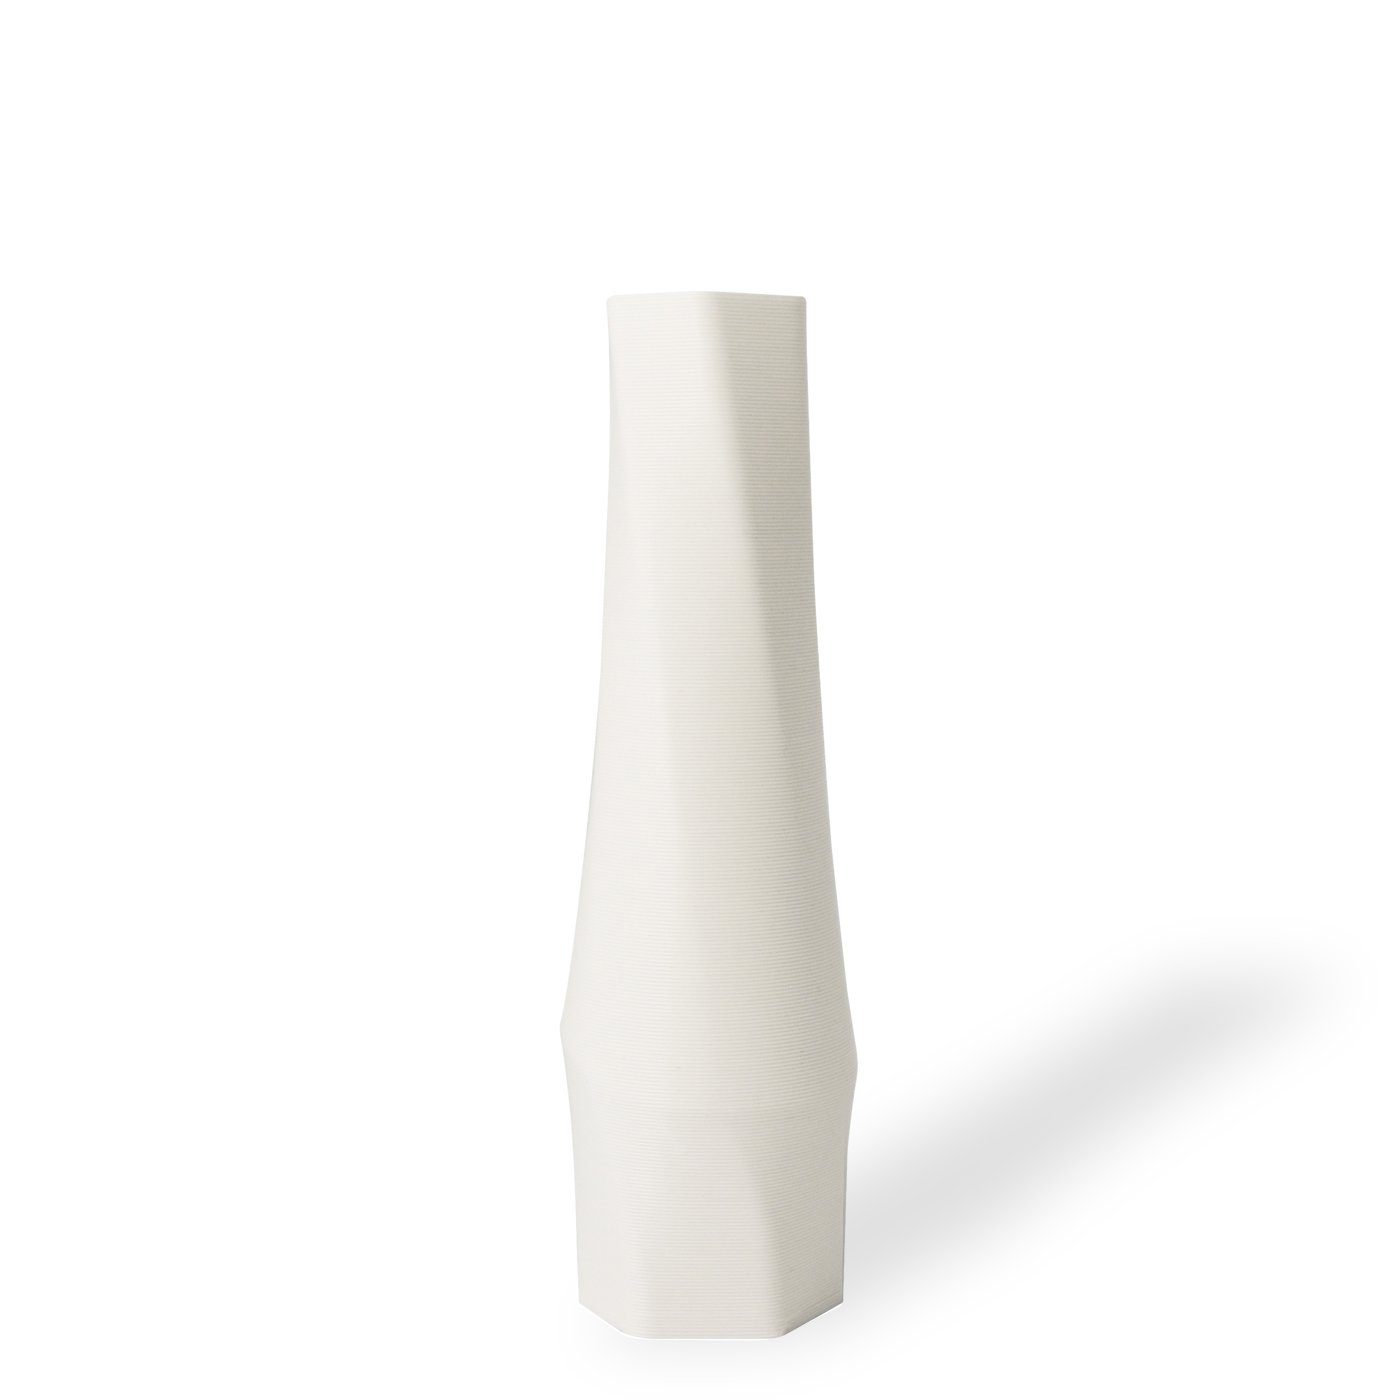 Shapes - Decorations Dekovase the vase - hexagon (basic), 3D Vasen, viele Farben, 100% 3D-Druck (Einzelmodell, 1 Vase), Wasserdicht; Leichte Struktur innerhalb des Materials (Rillung) Weiß